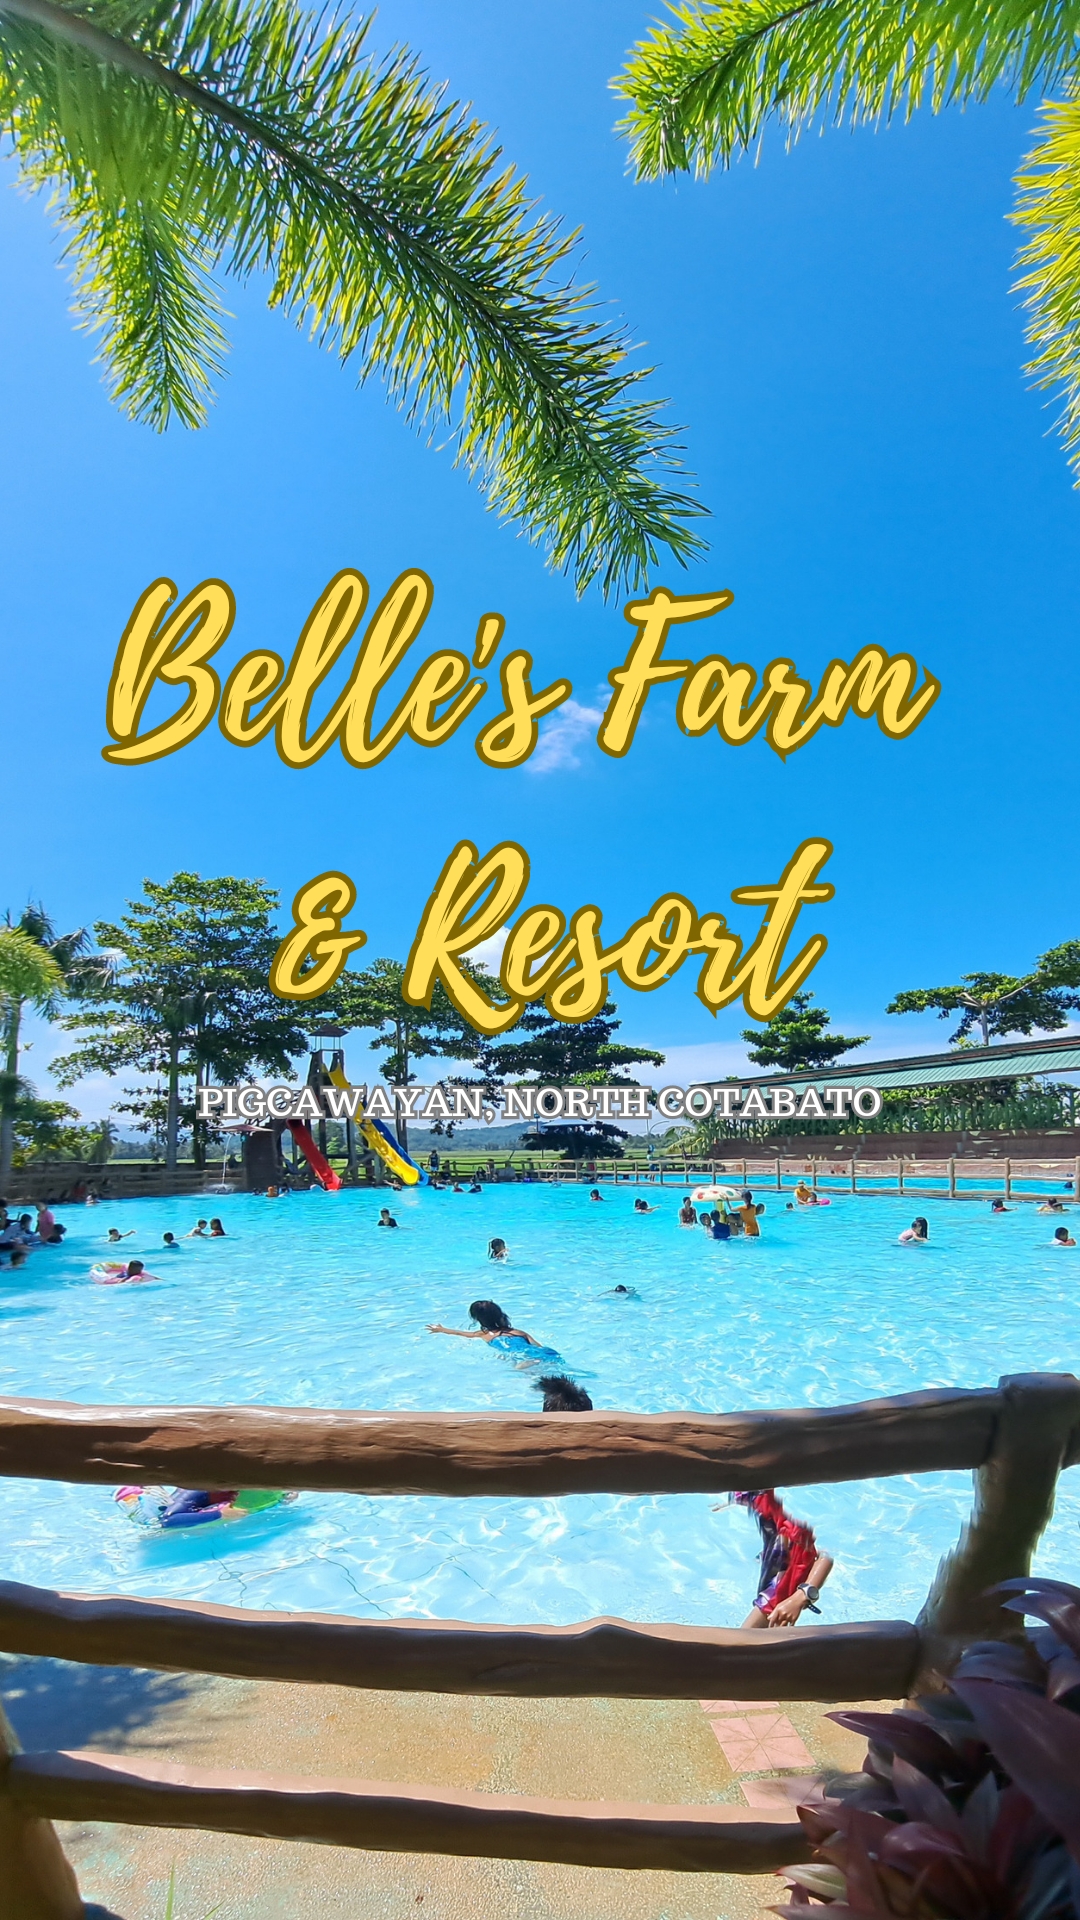 Belle's Farm and Resort in Pigcawayan, North Cotabato